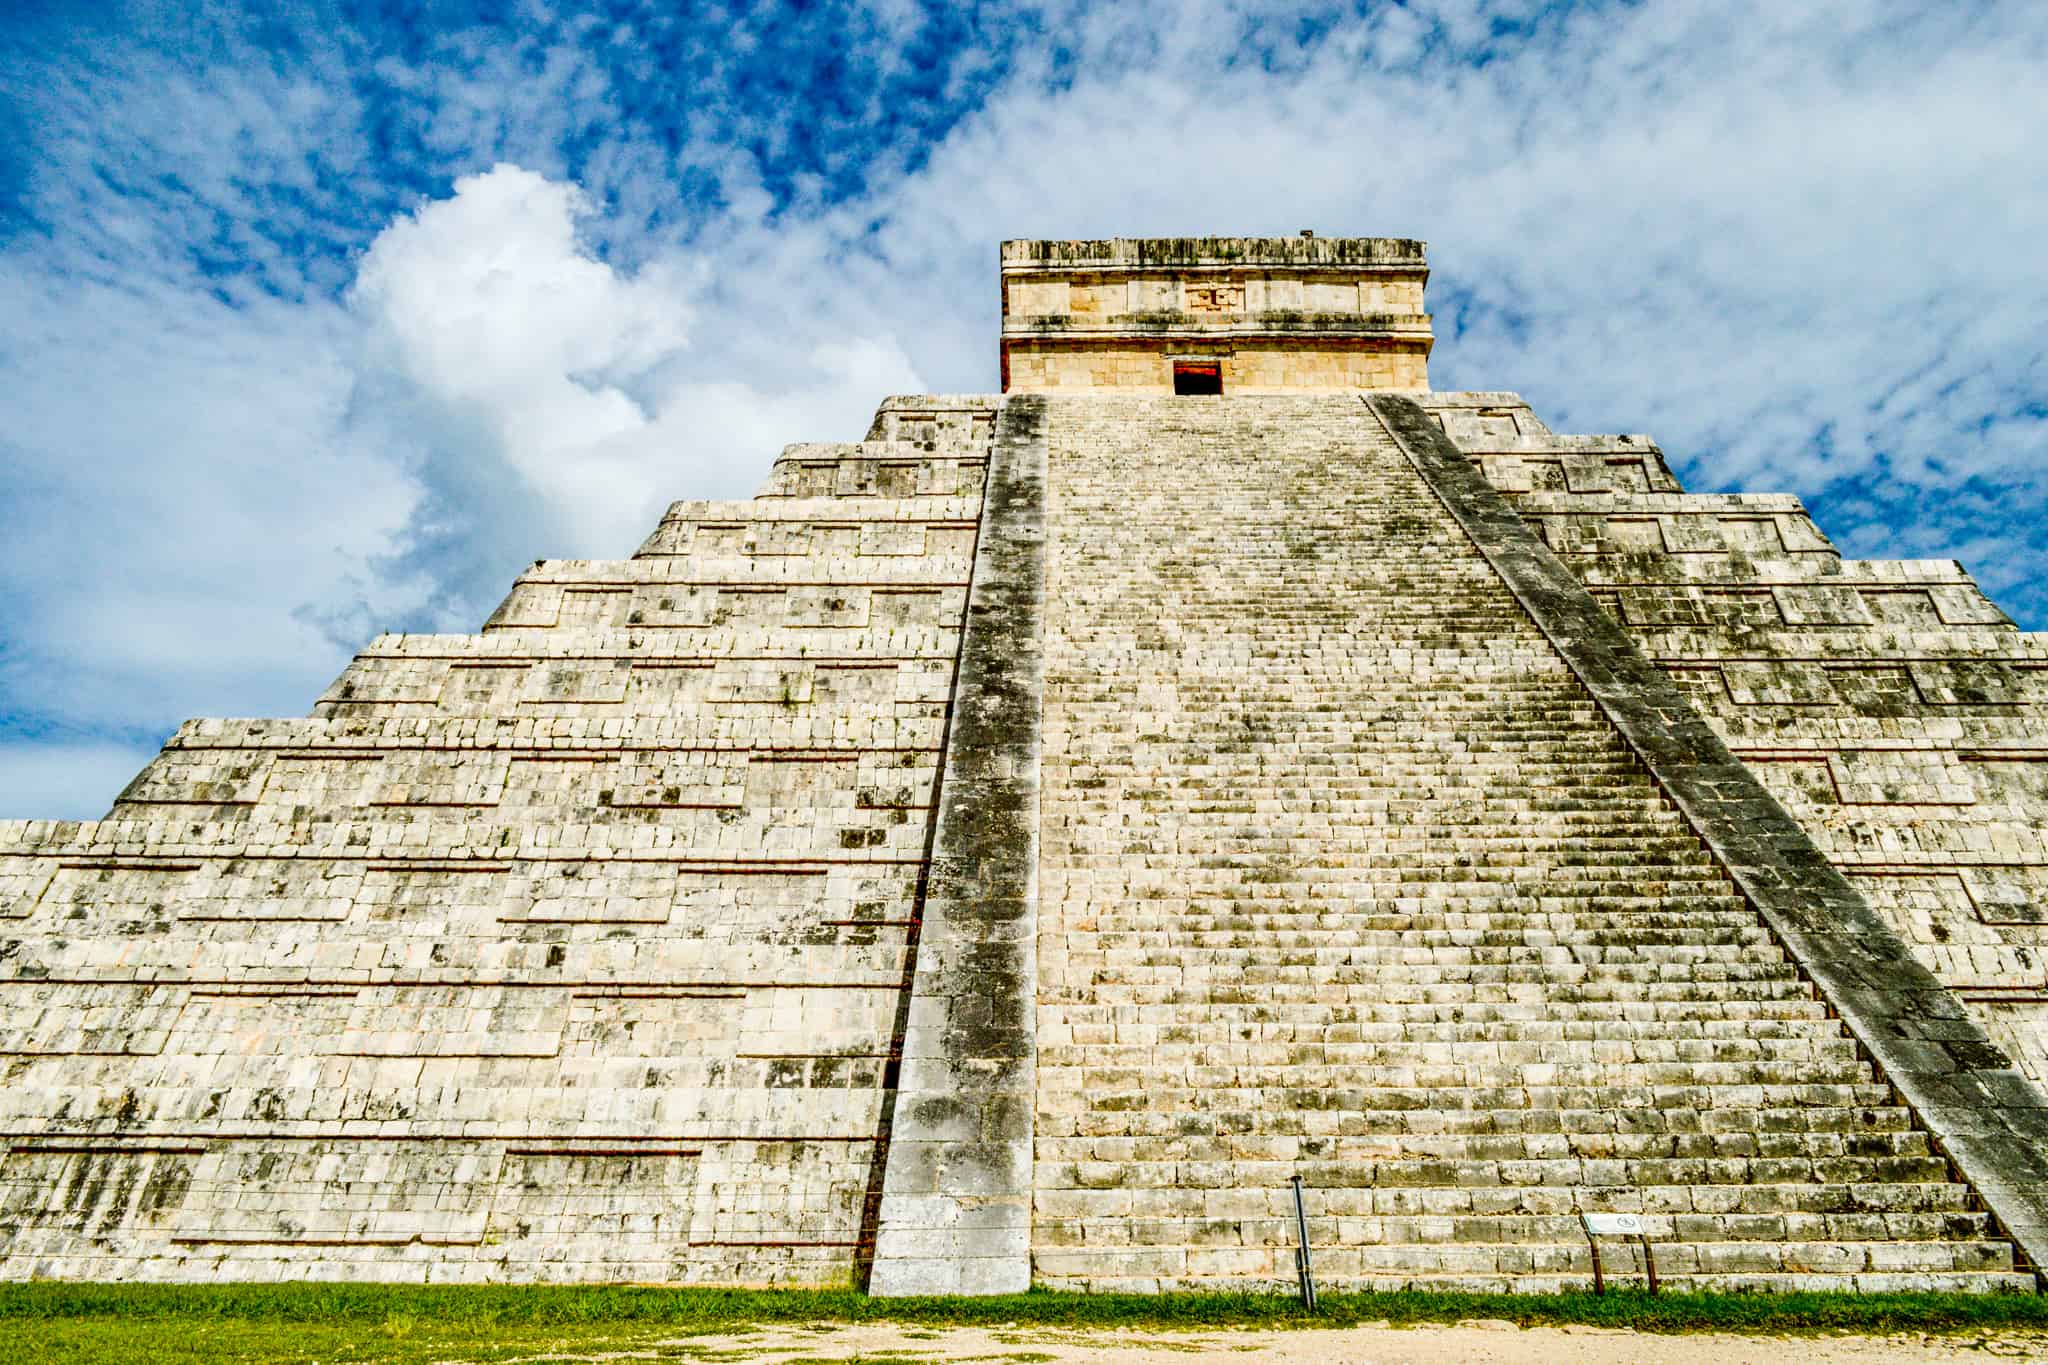 The Mayan Pyramid Chichen Itza in Mexico